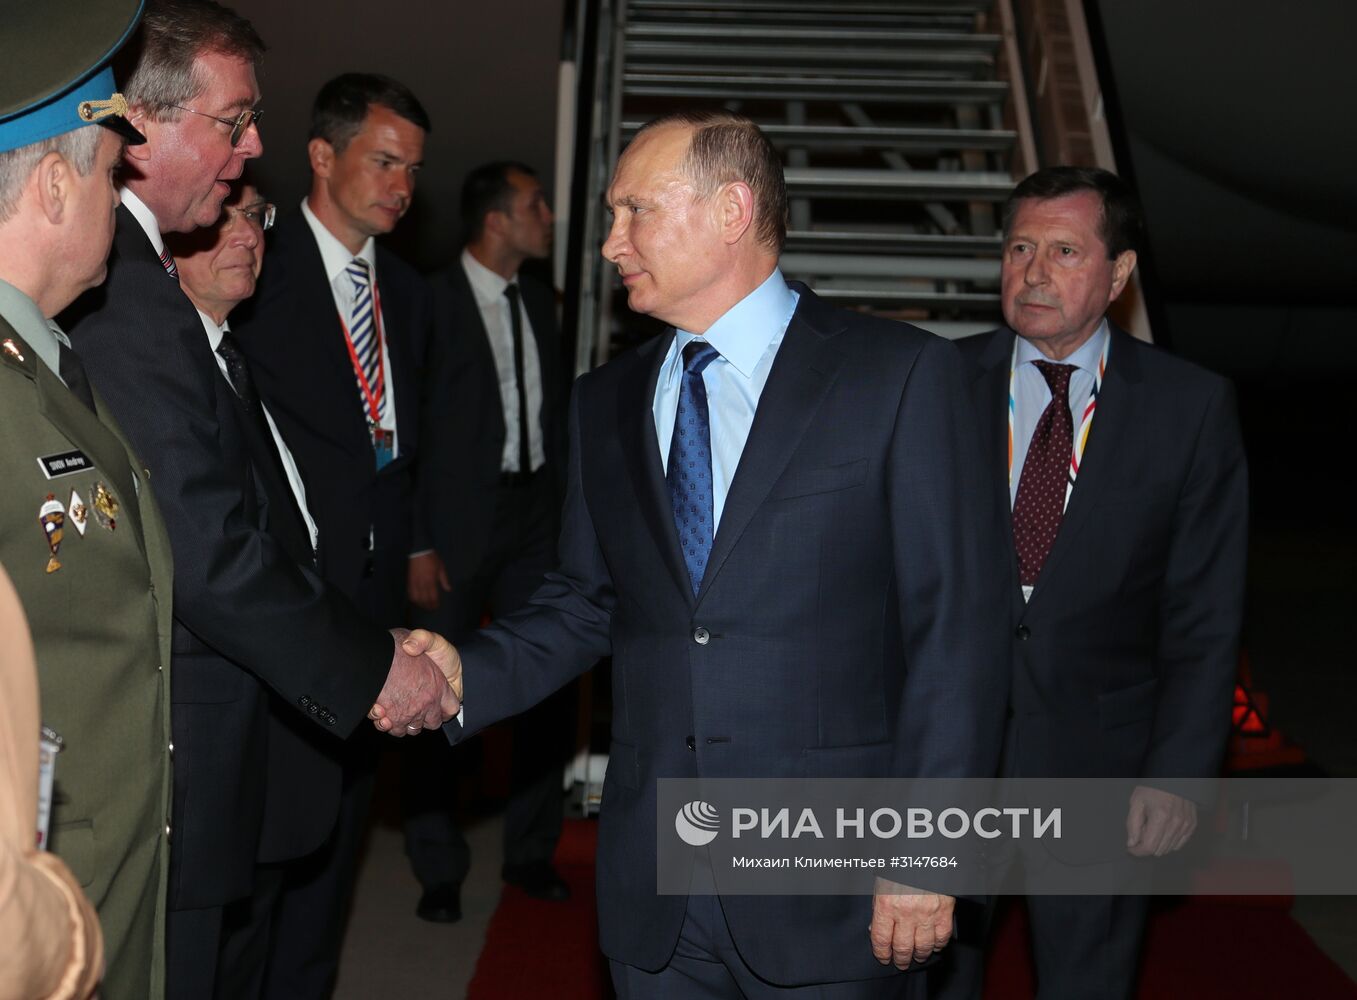 Президент РФ В. Путин принимает участие в саммите "Группы двадцати" в Гамбурге